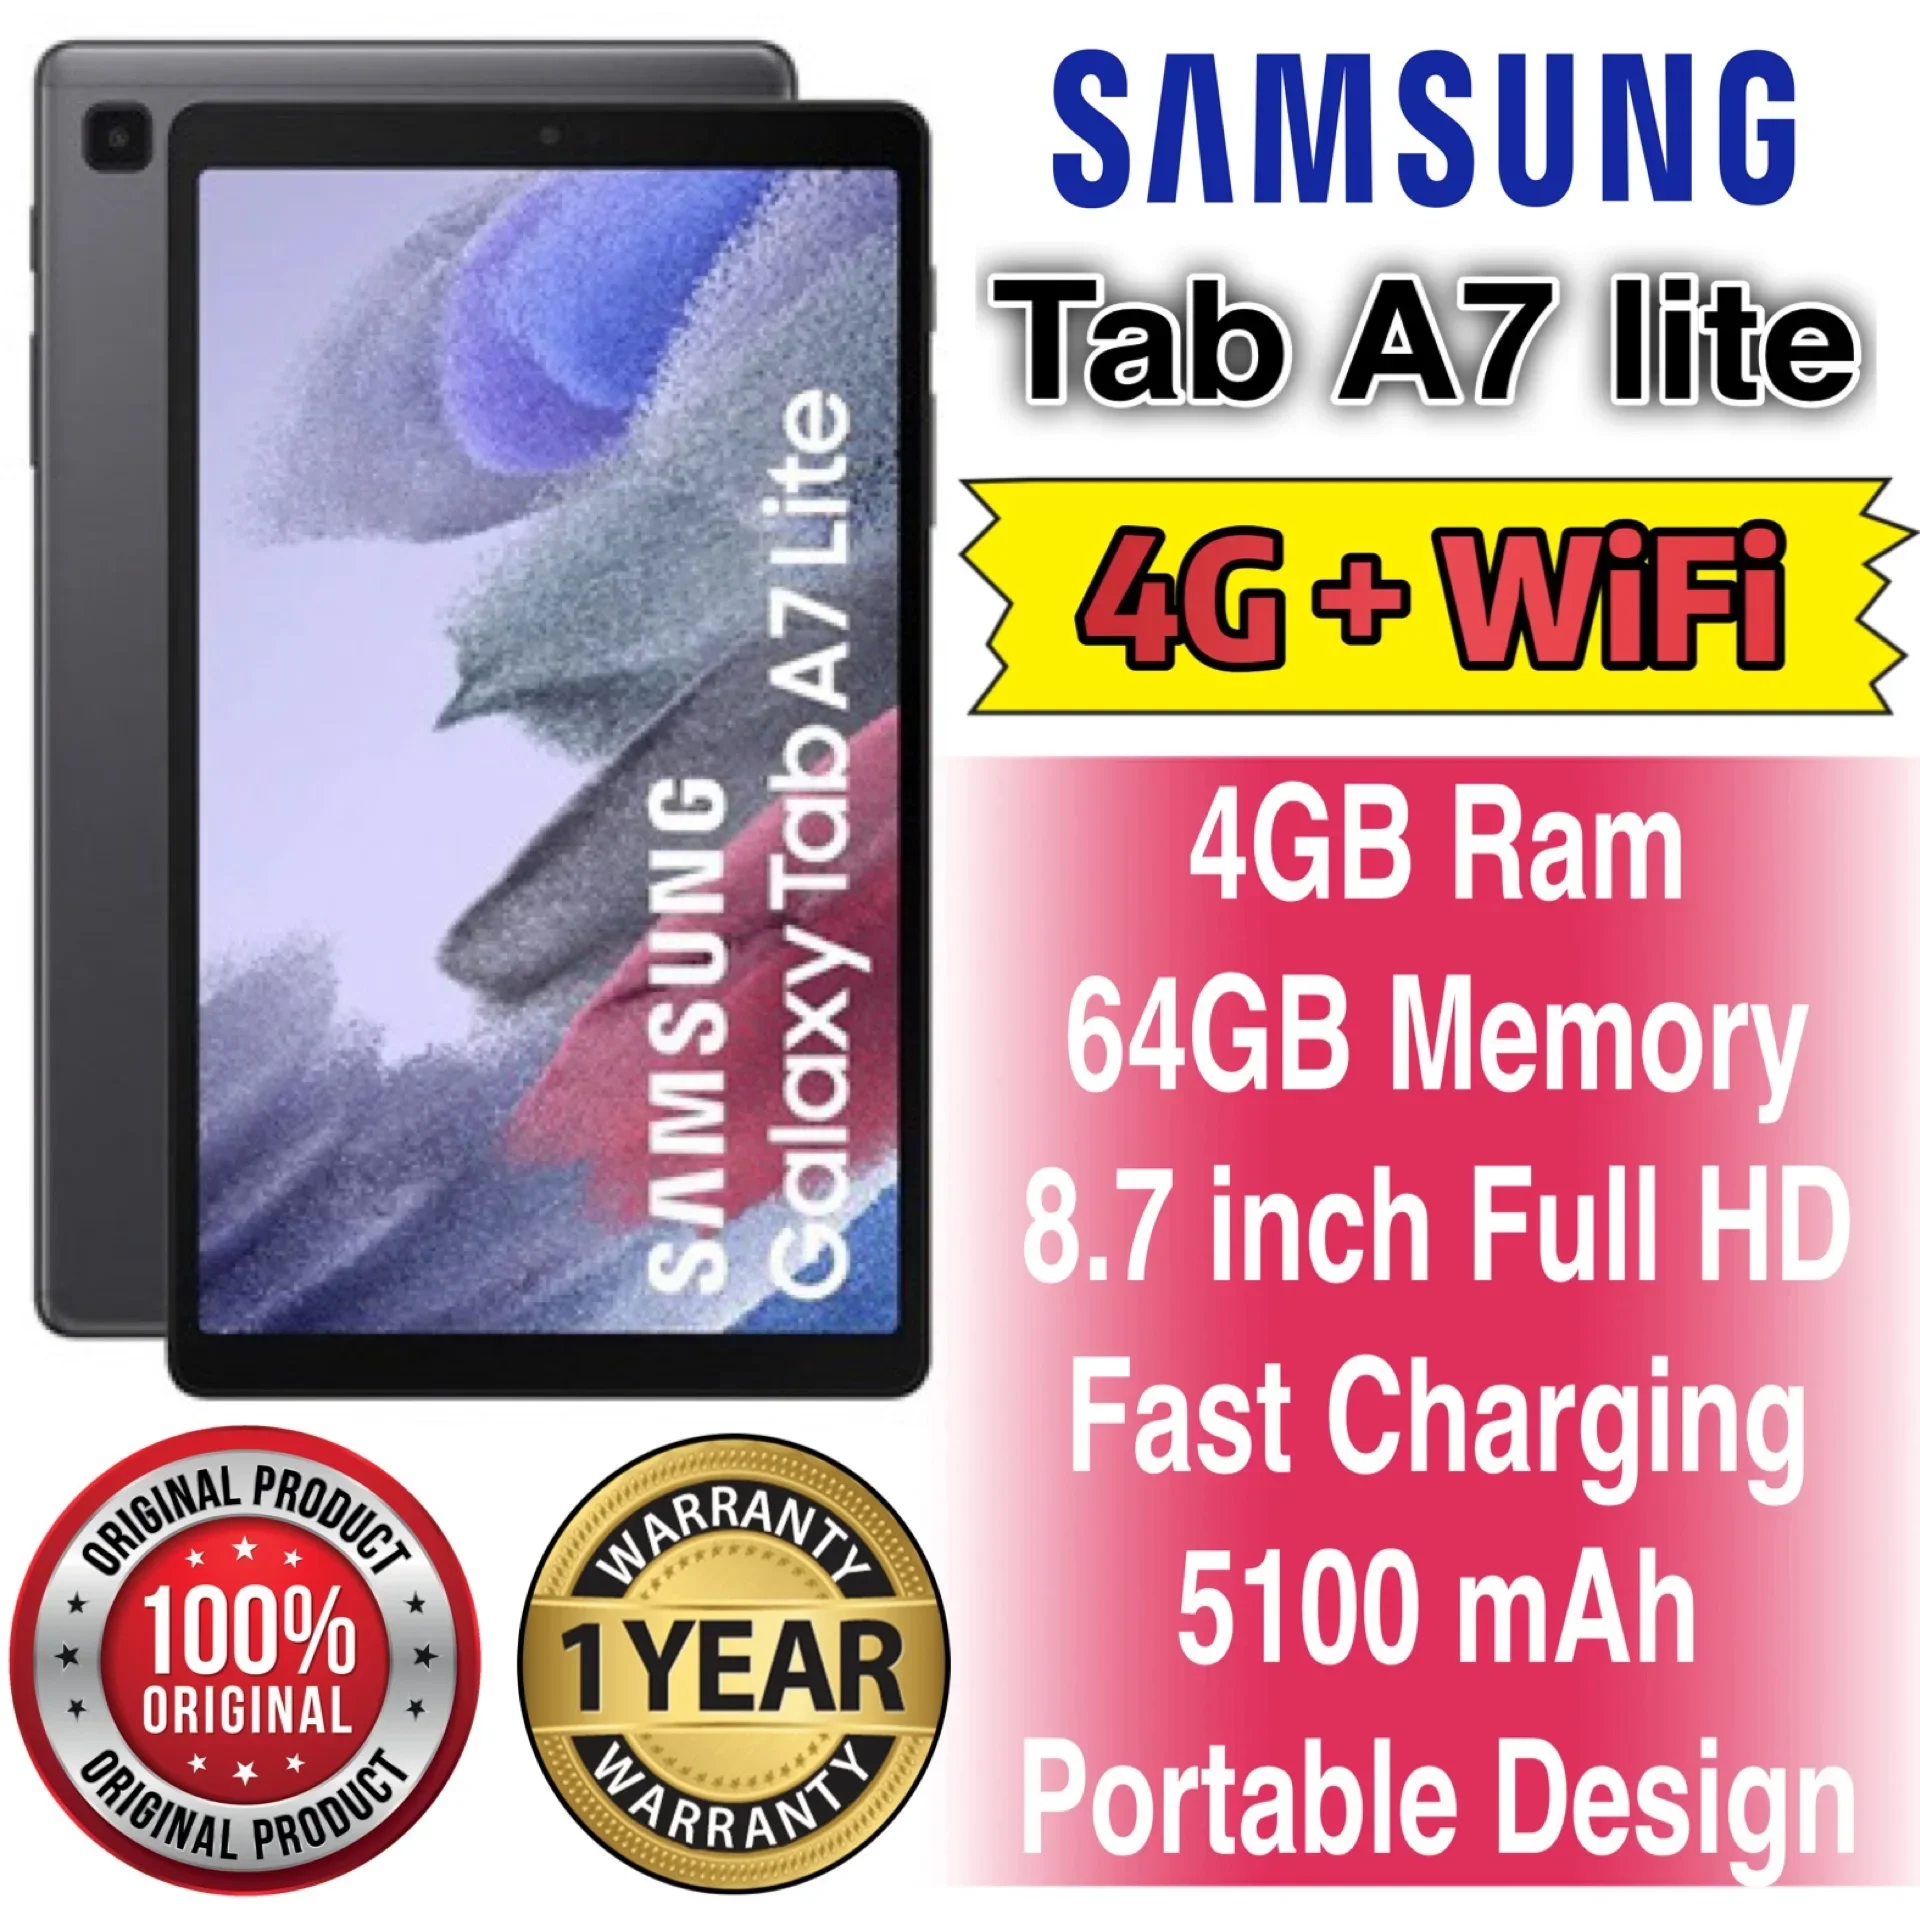 4G LTE cellular - Samsung Galaxy Tab A7 Lite (32GB / 64GB) 1 Year Warranty